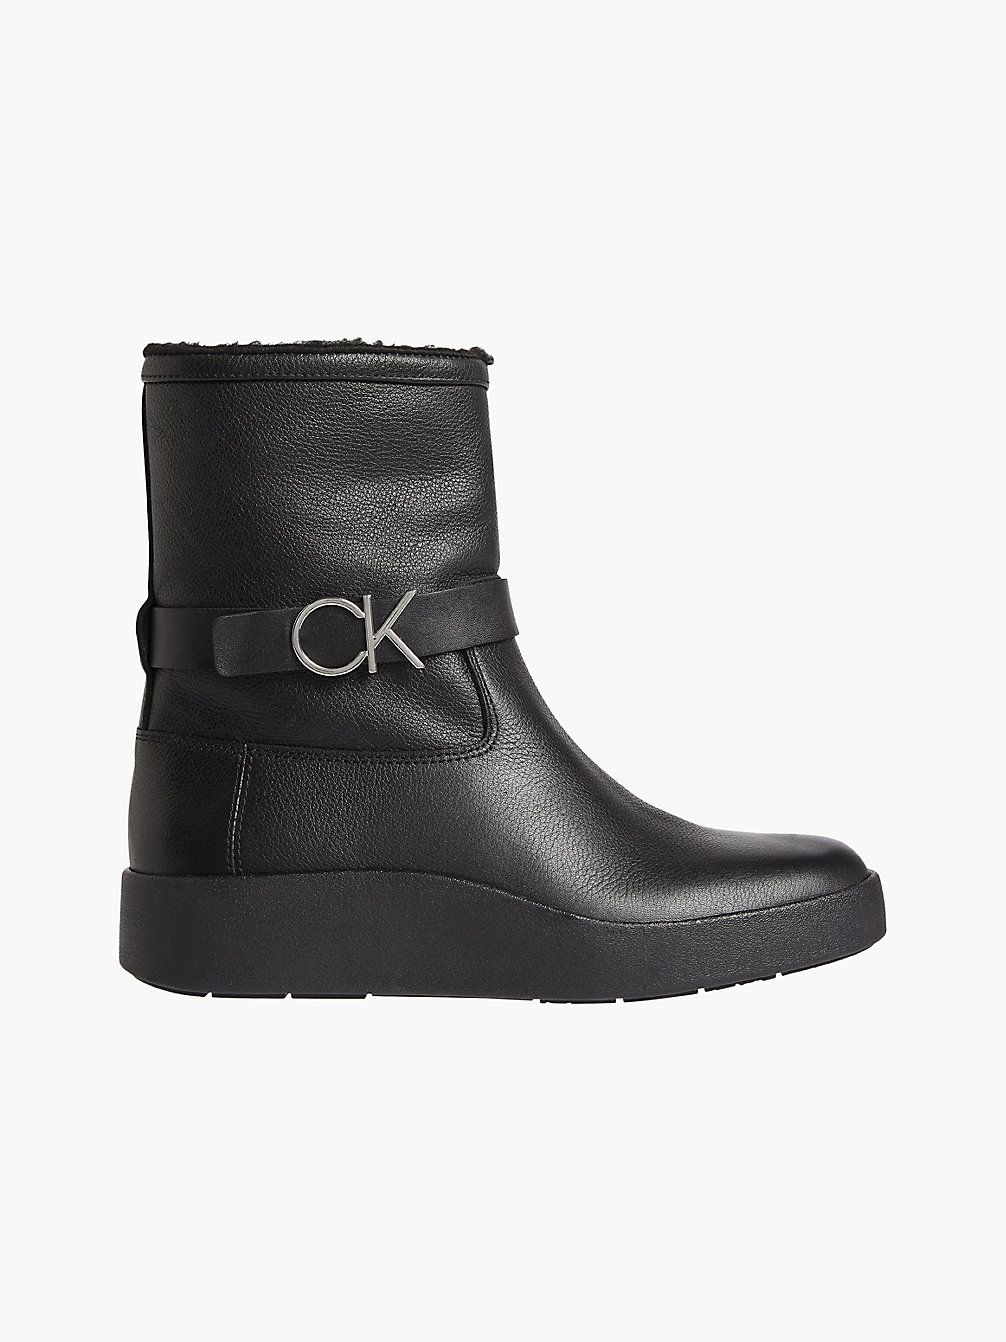 CK BLACK > Skórzane Botki > undefined Kobiety - Calvin Klein